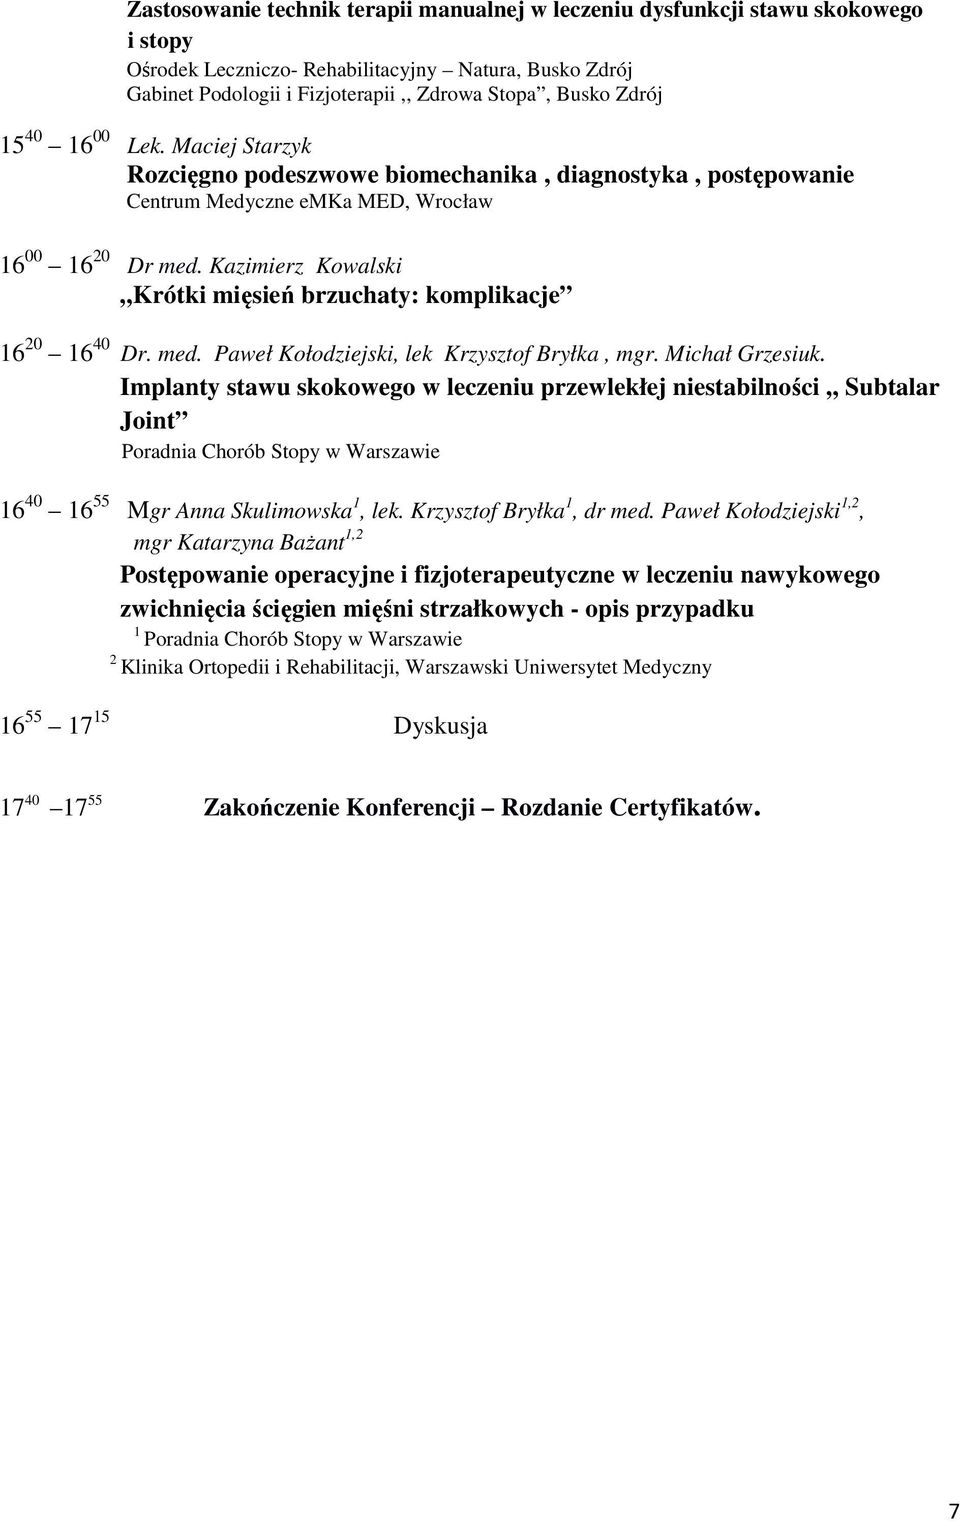 Kazimierz Kowalski Krótki mięsień brzuchaty: komplikacje 16 20 16 40 Dr. med. Paweł Kołodziejski, lek Krzysztof Bryłka, mgr. Michał Grzesiuk.